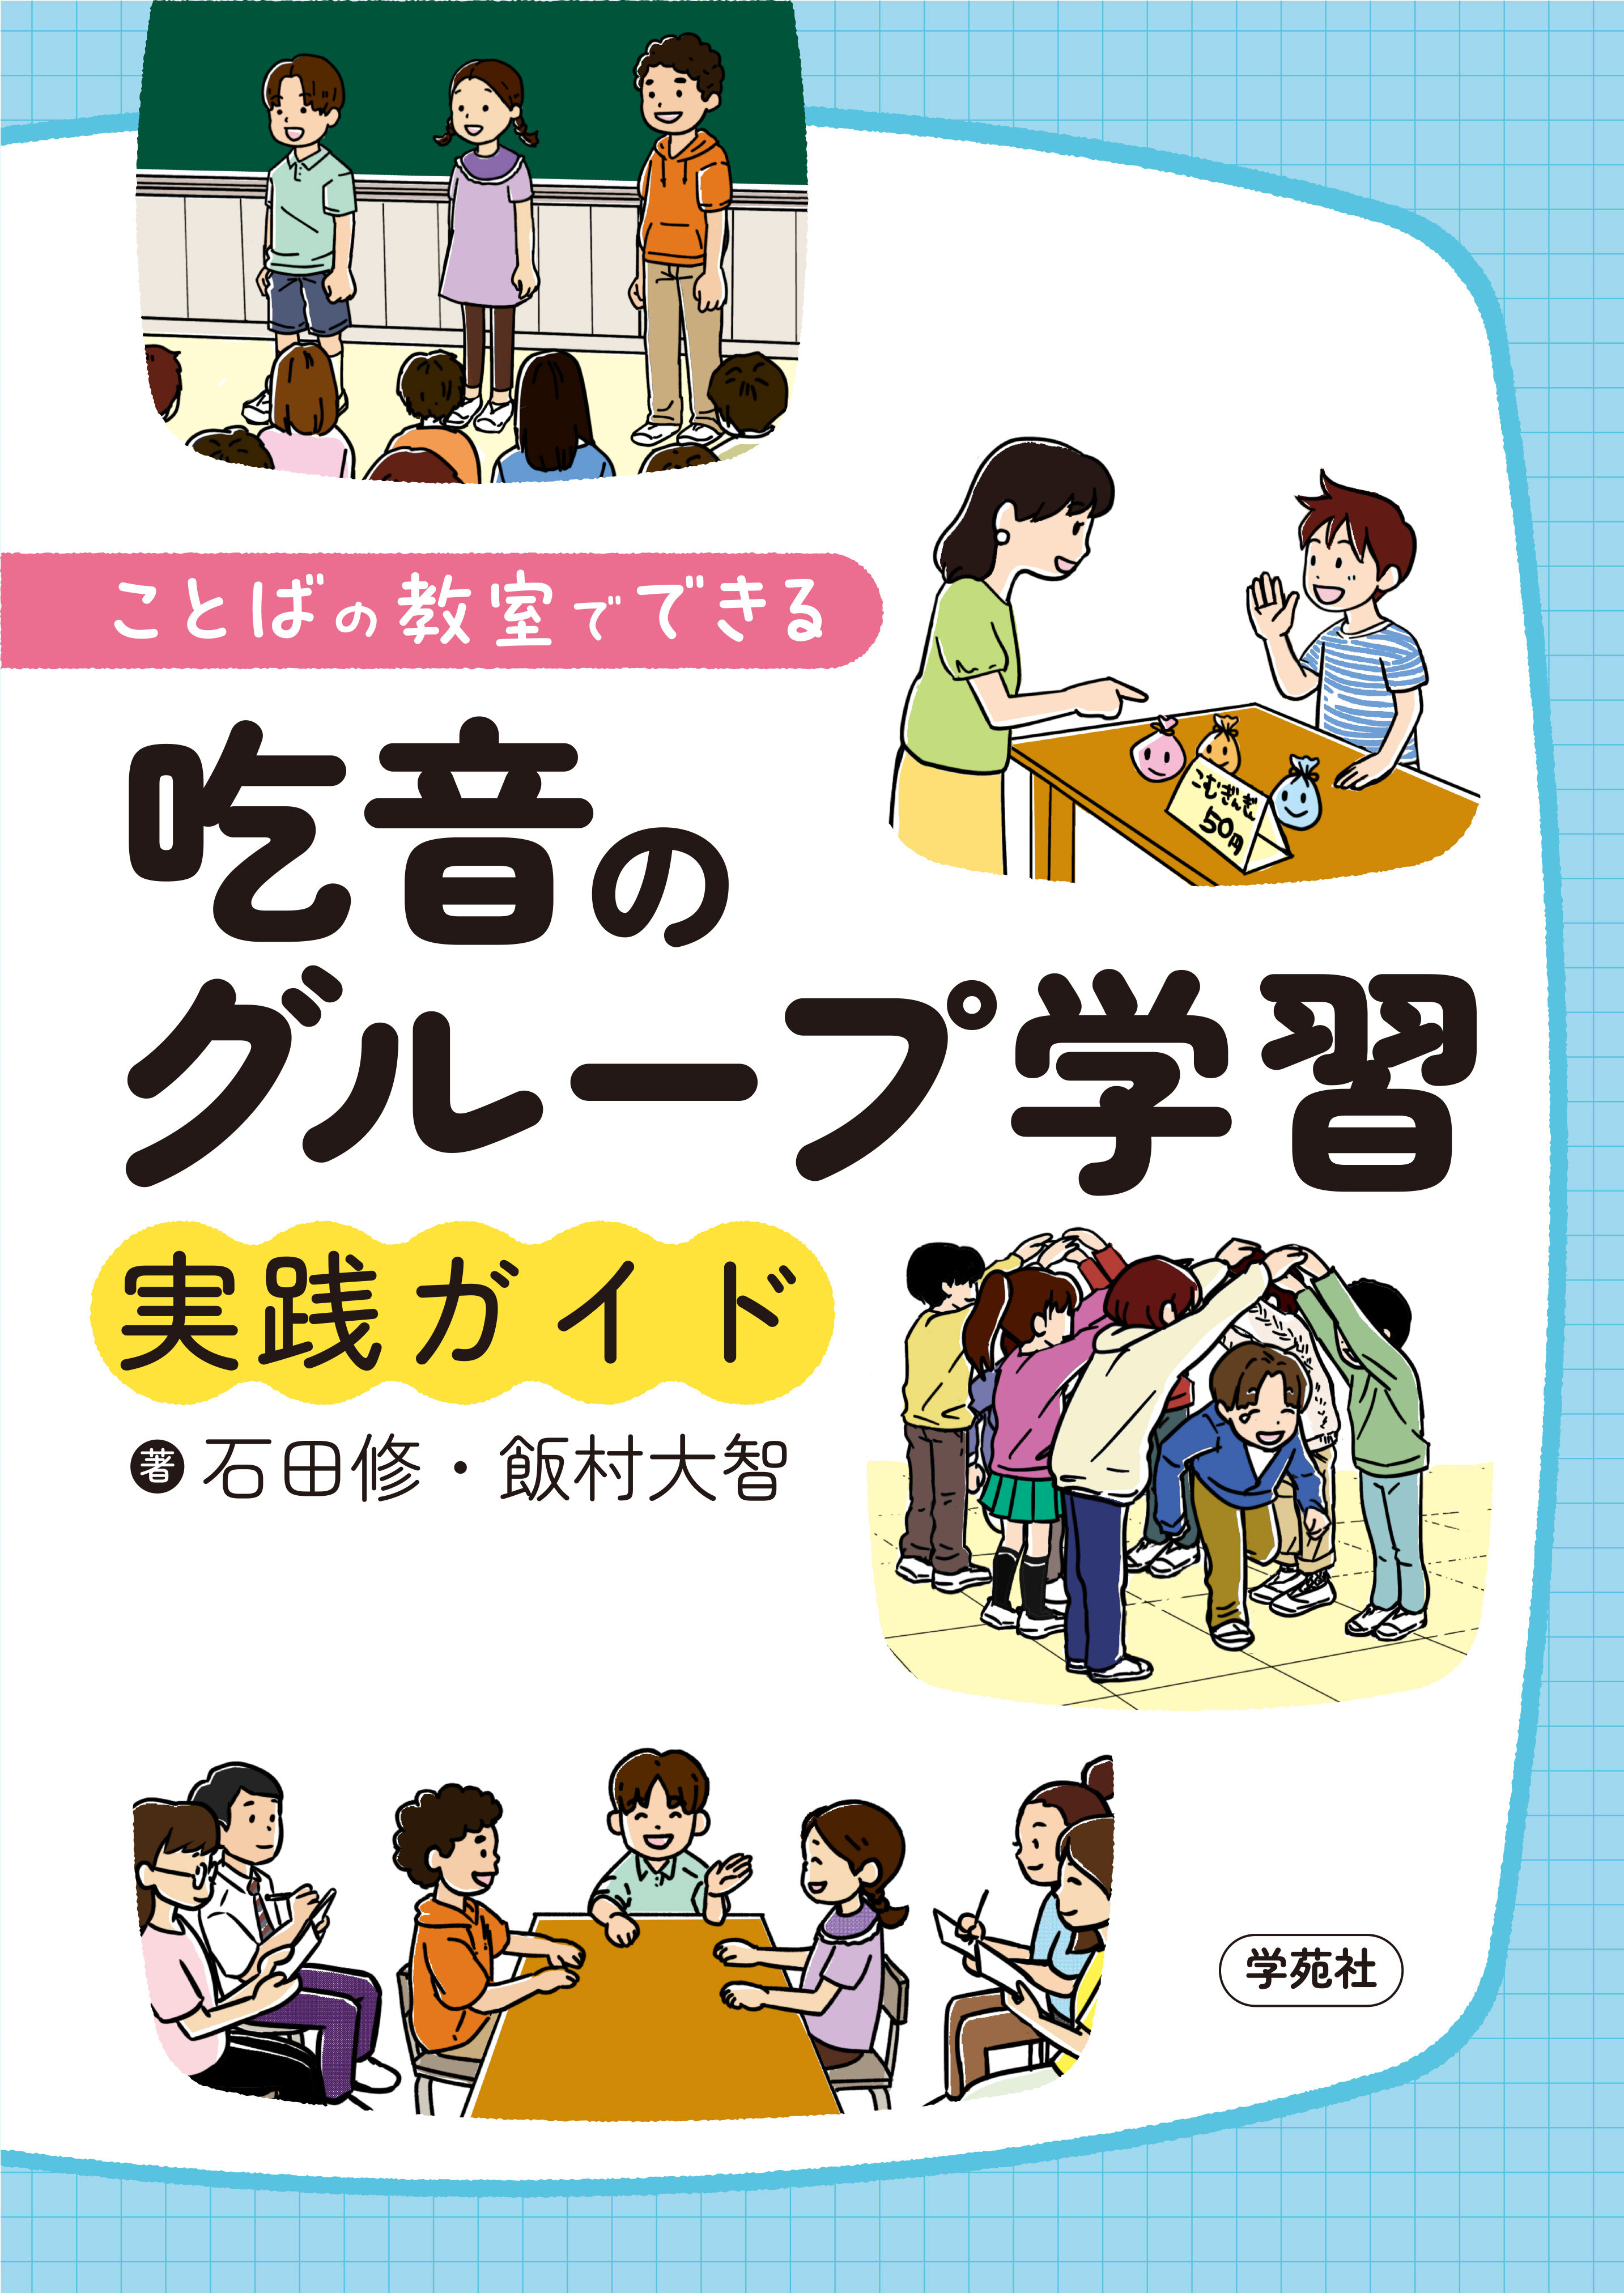 【著作?制作物紹介】教育?石田修助教 共著「ことばの教室でできる吃音のグループ学習実践ガイド」